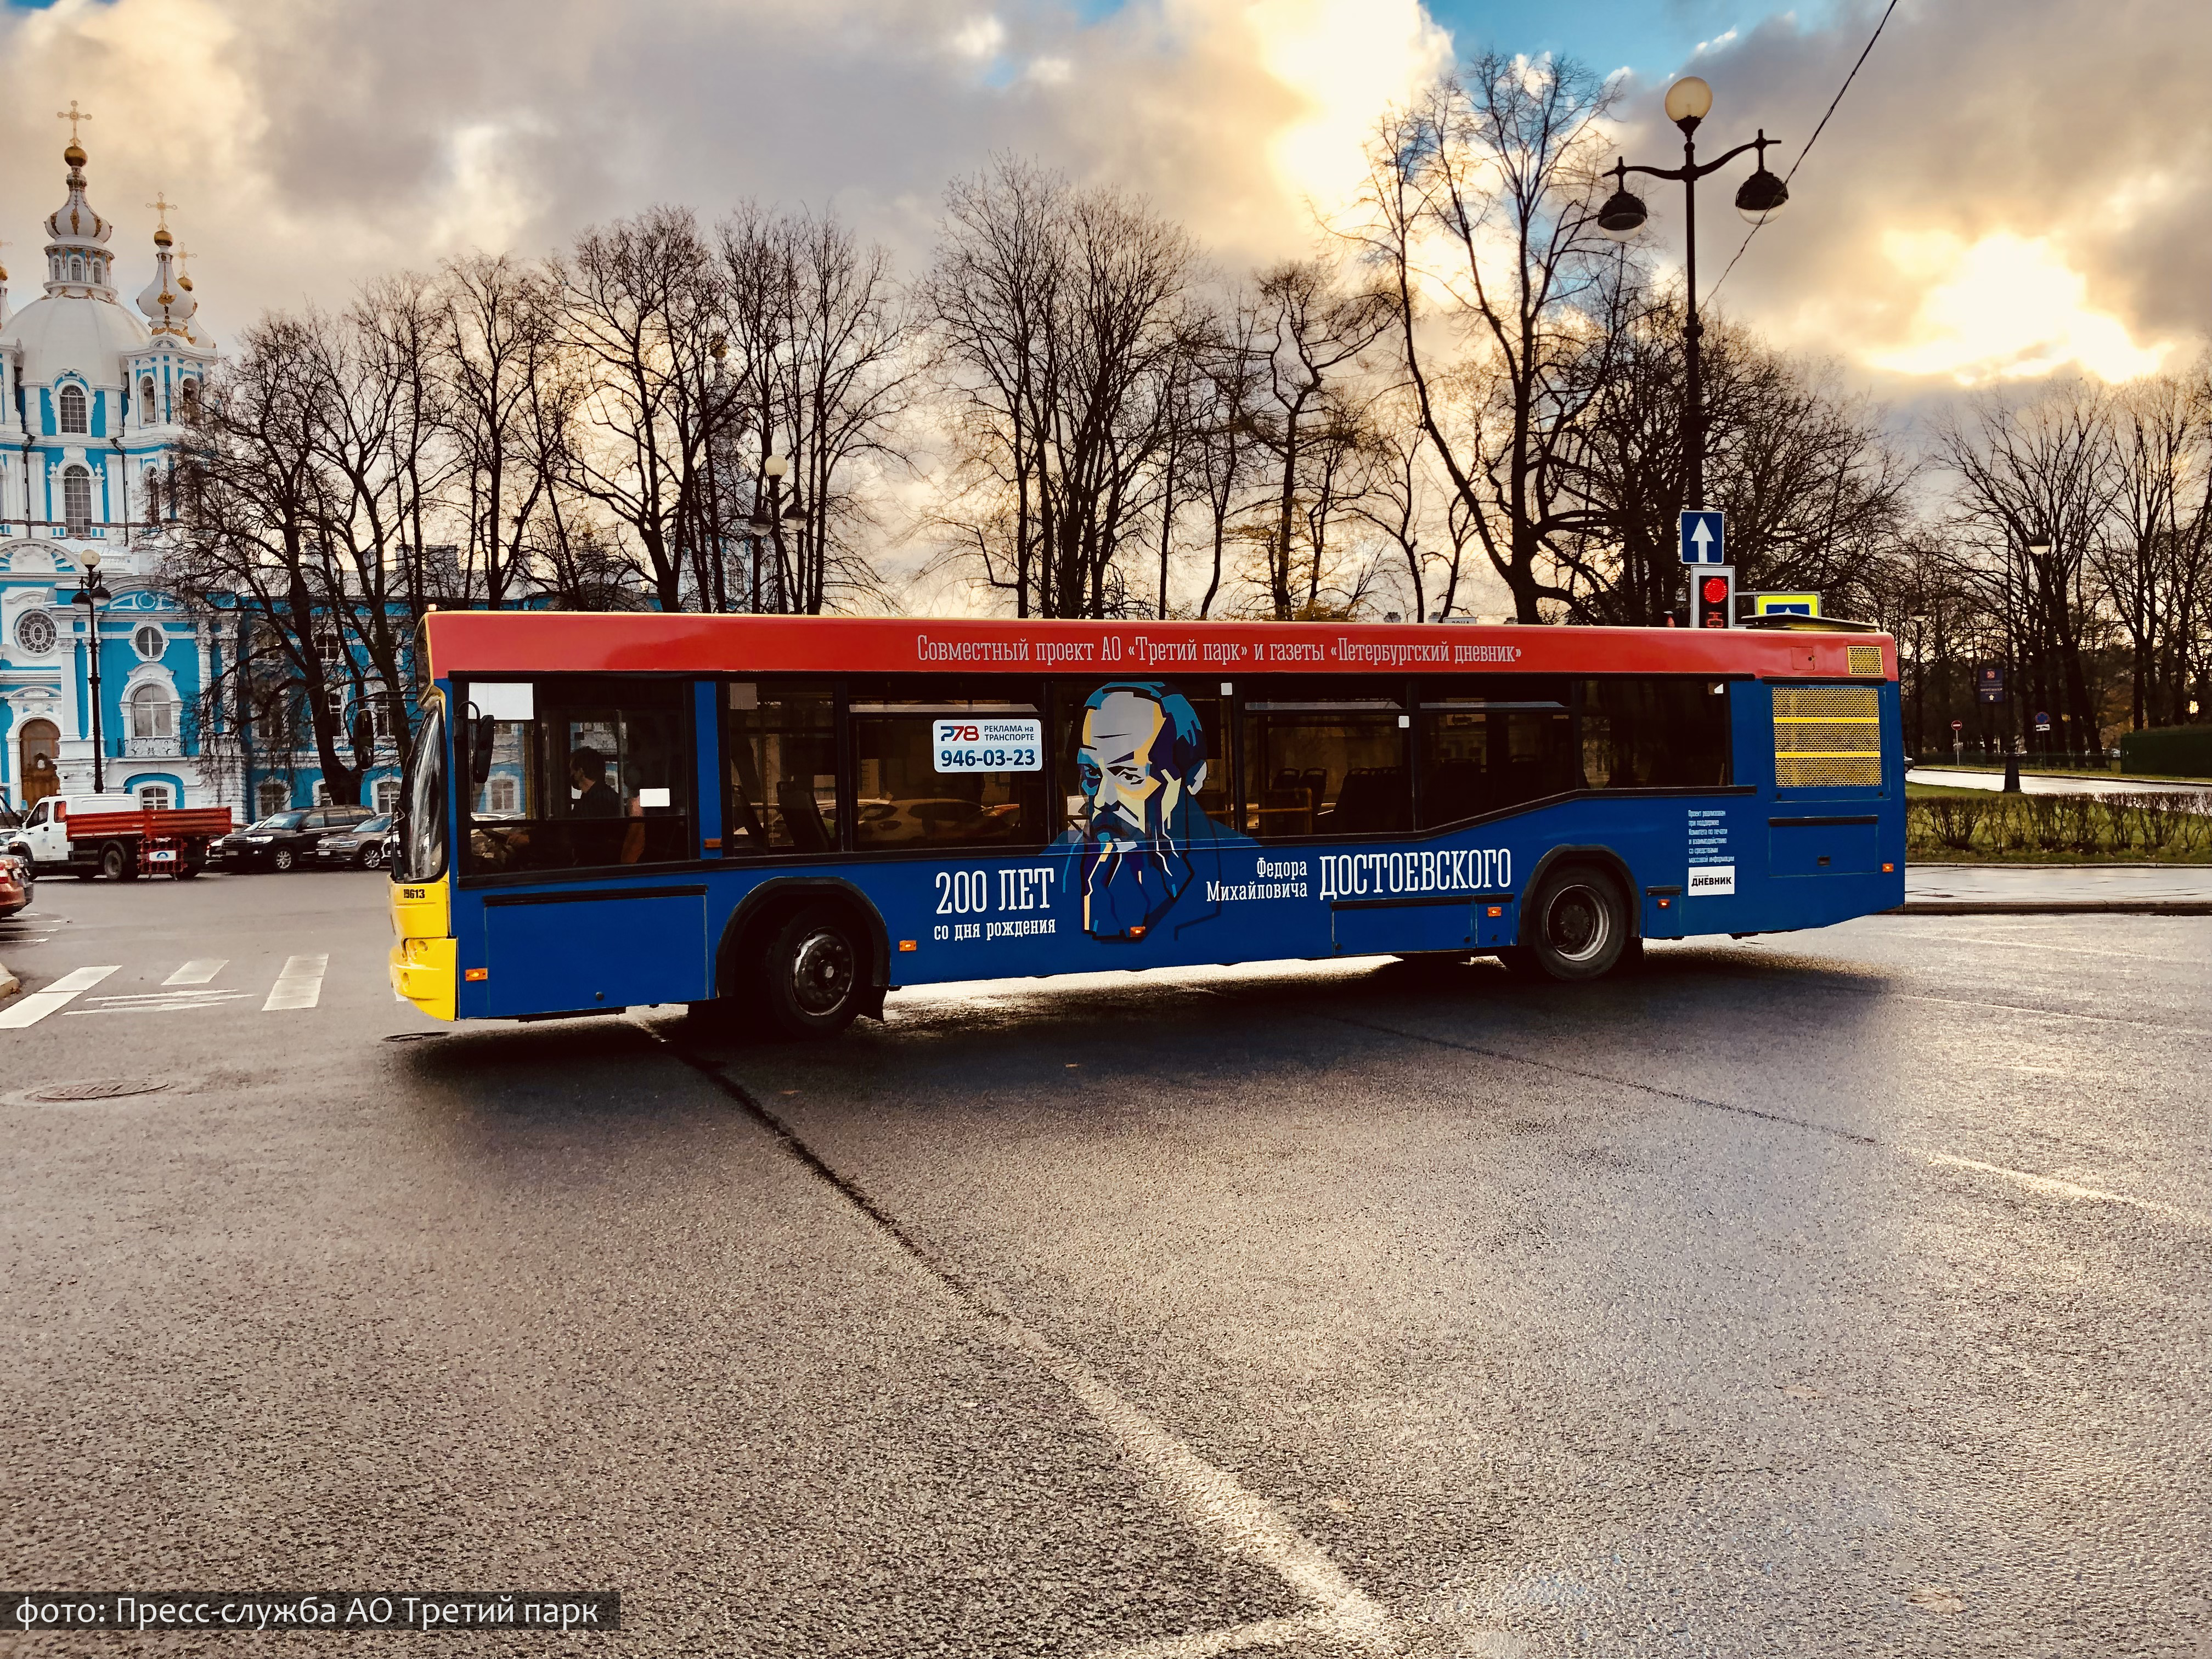 Третий Парк совместно с газетой Петербургский Дневник подарили городу автобус Достоевского в честь 200-летия со дня рождения писателя